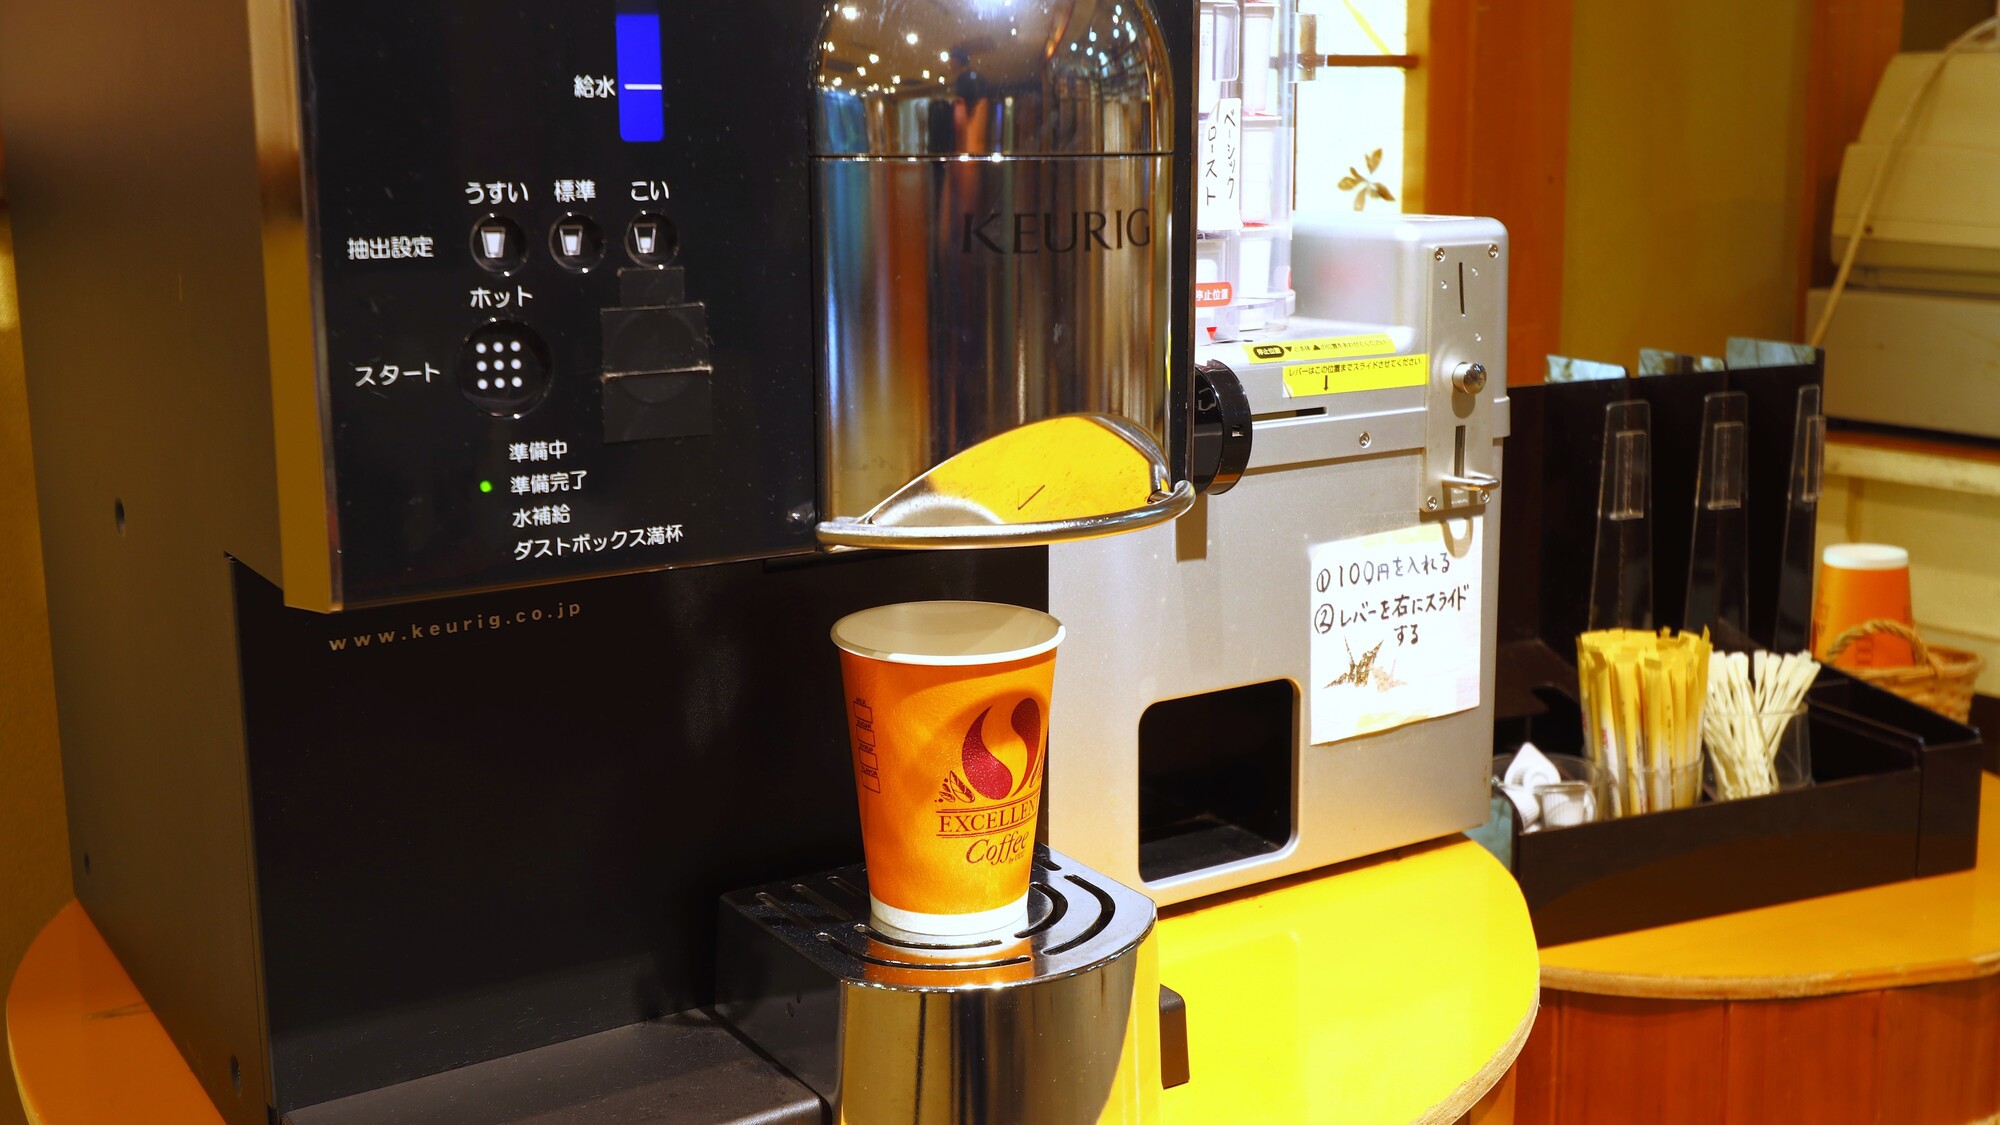 ー設備・サービスーコーヒーマシン（有料）